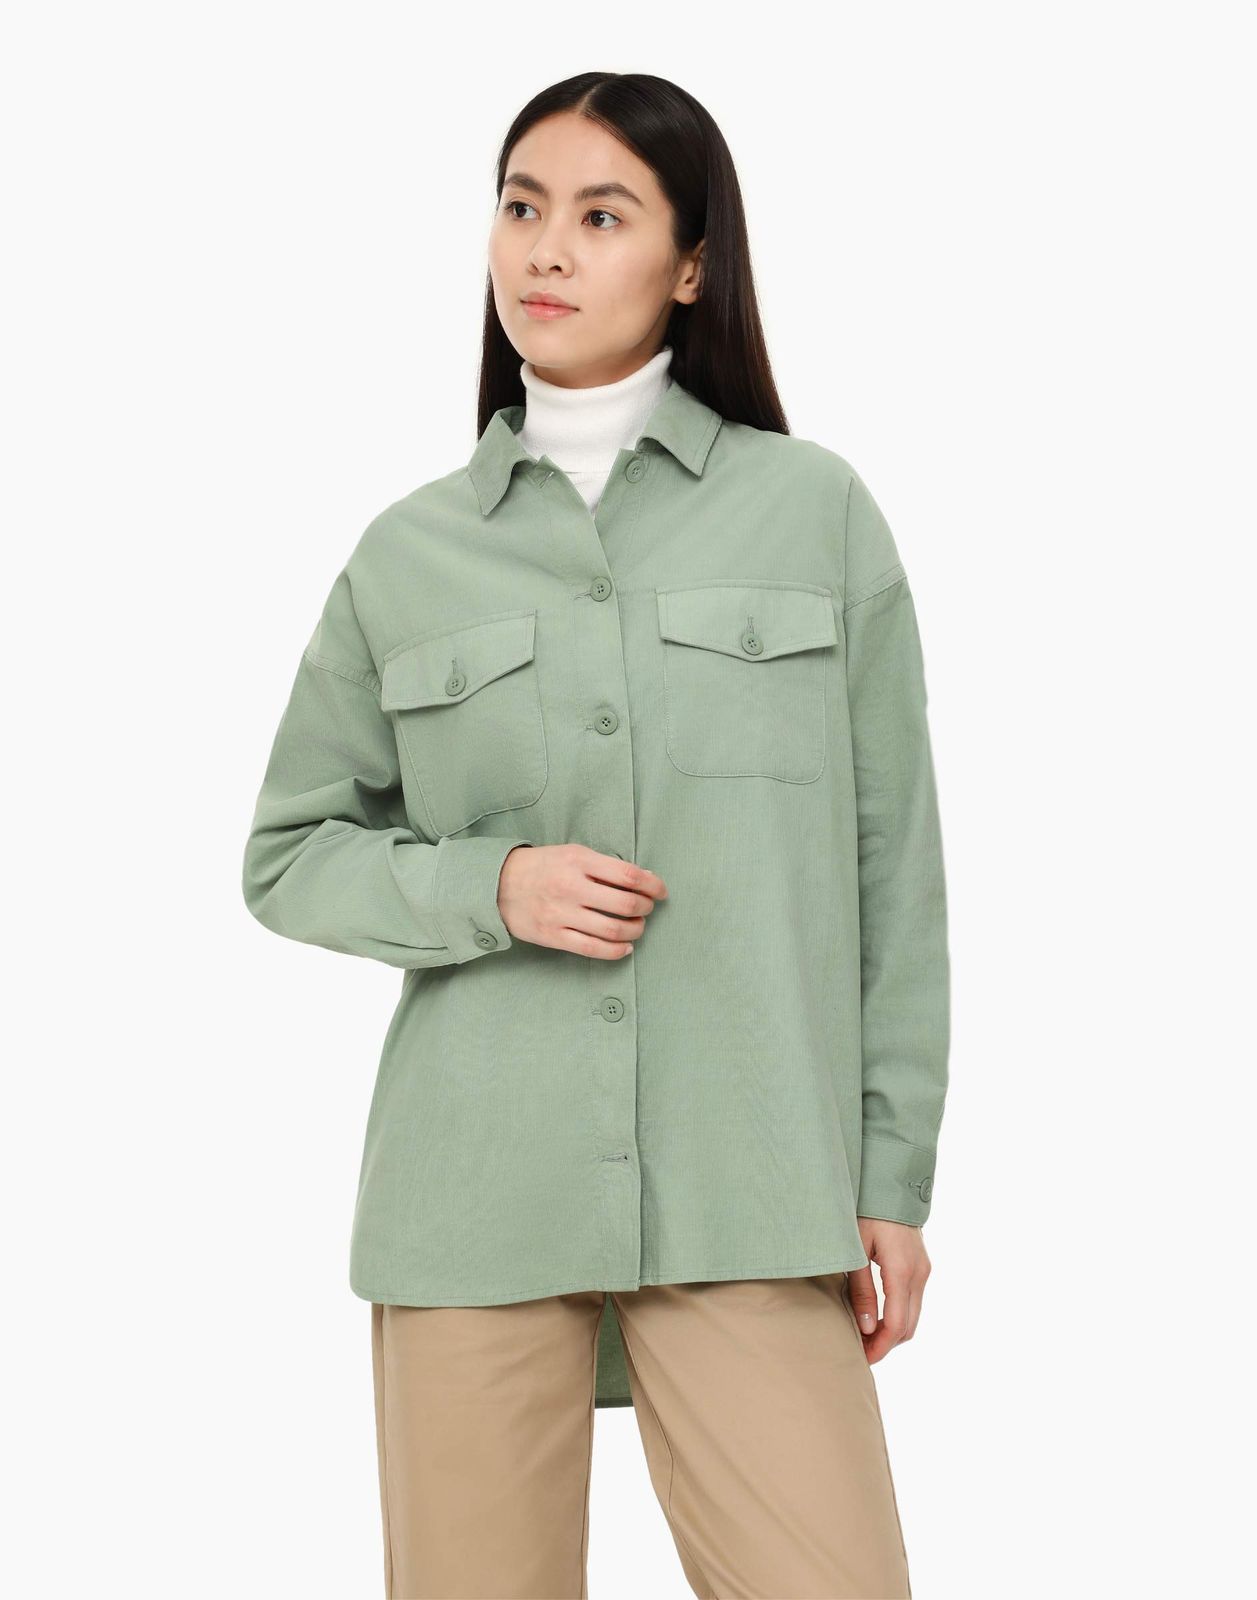 Рубашка женская Gloria Jeans GWT003205 зеленая XXS-XS (36-40)